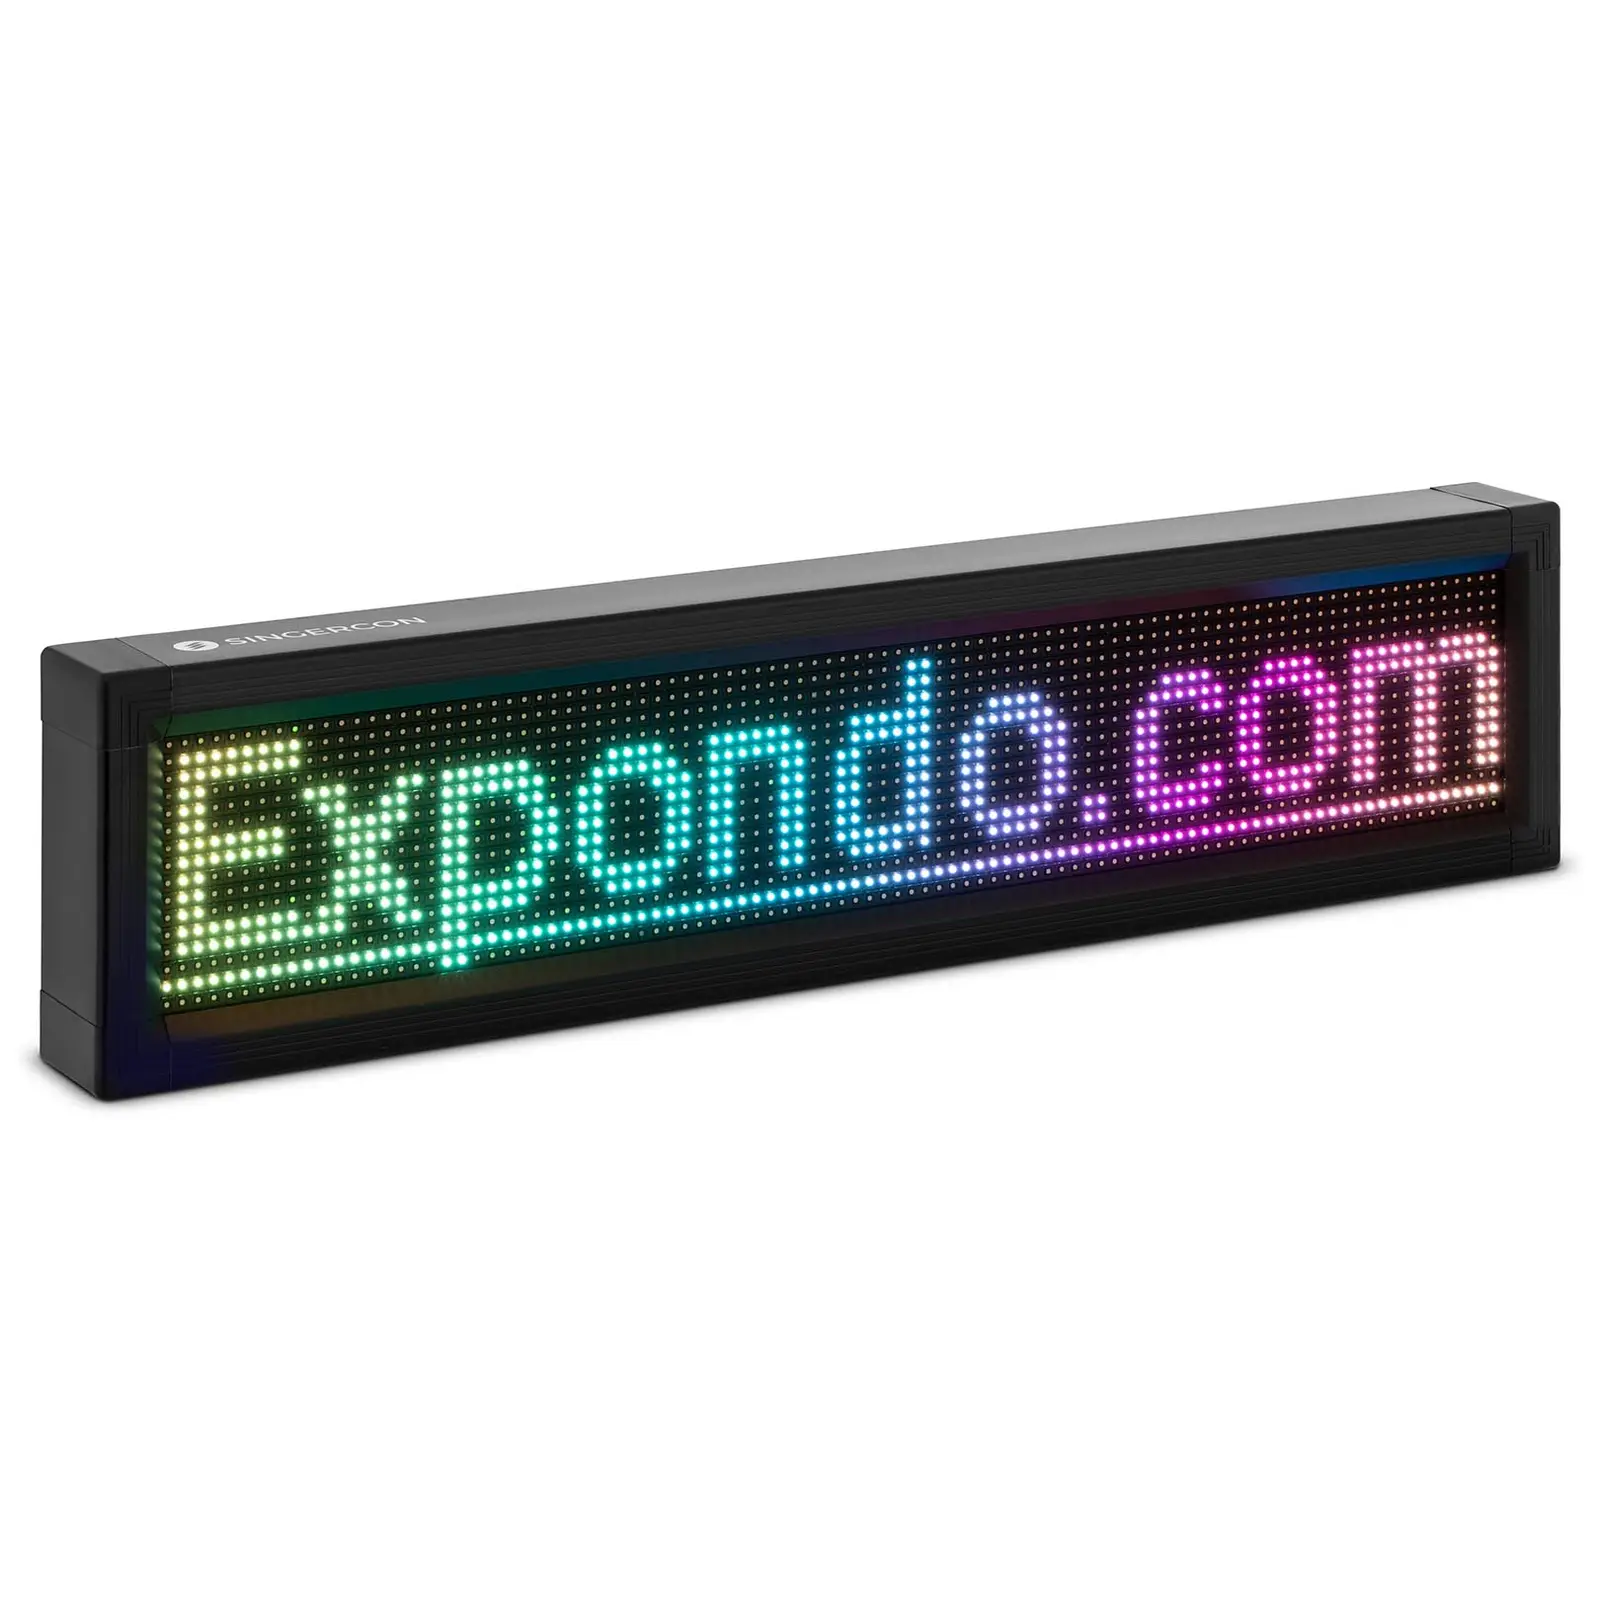 Panneau publicitaire LED - 96 x 16 LED couleur - 105 x 25 cm - Programmable via iOS / Android